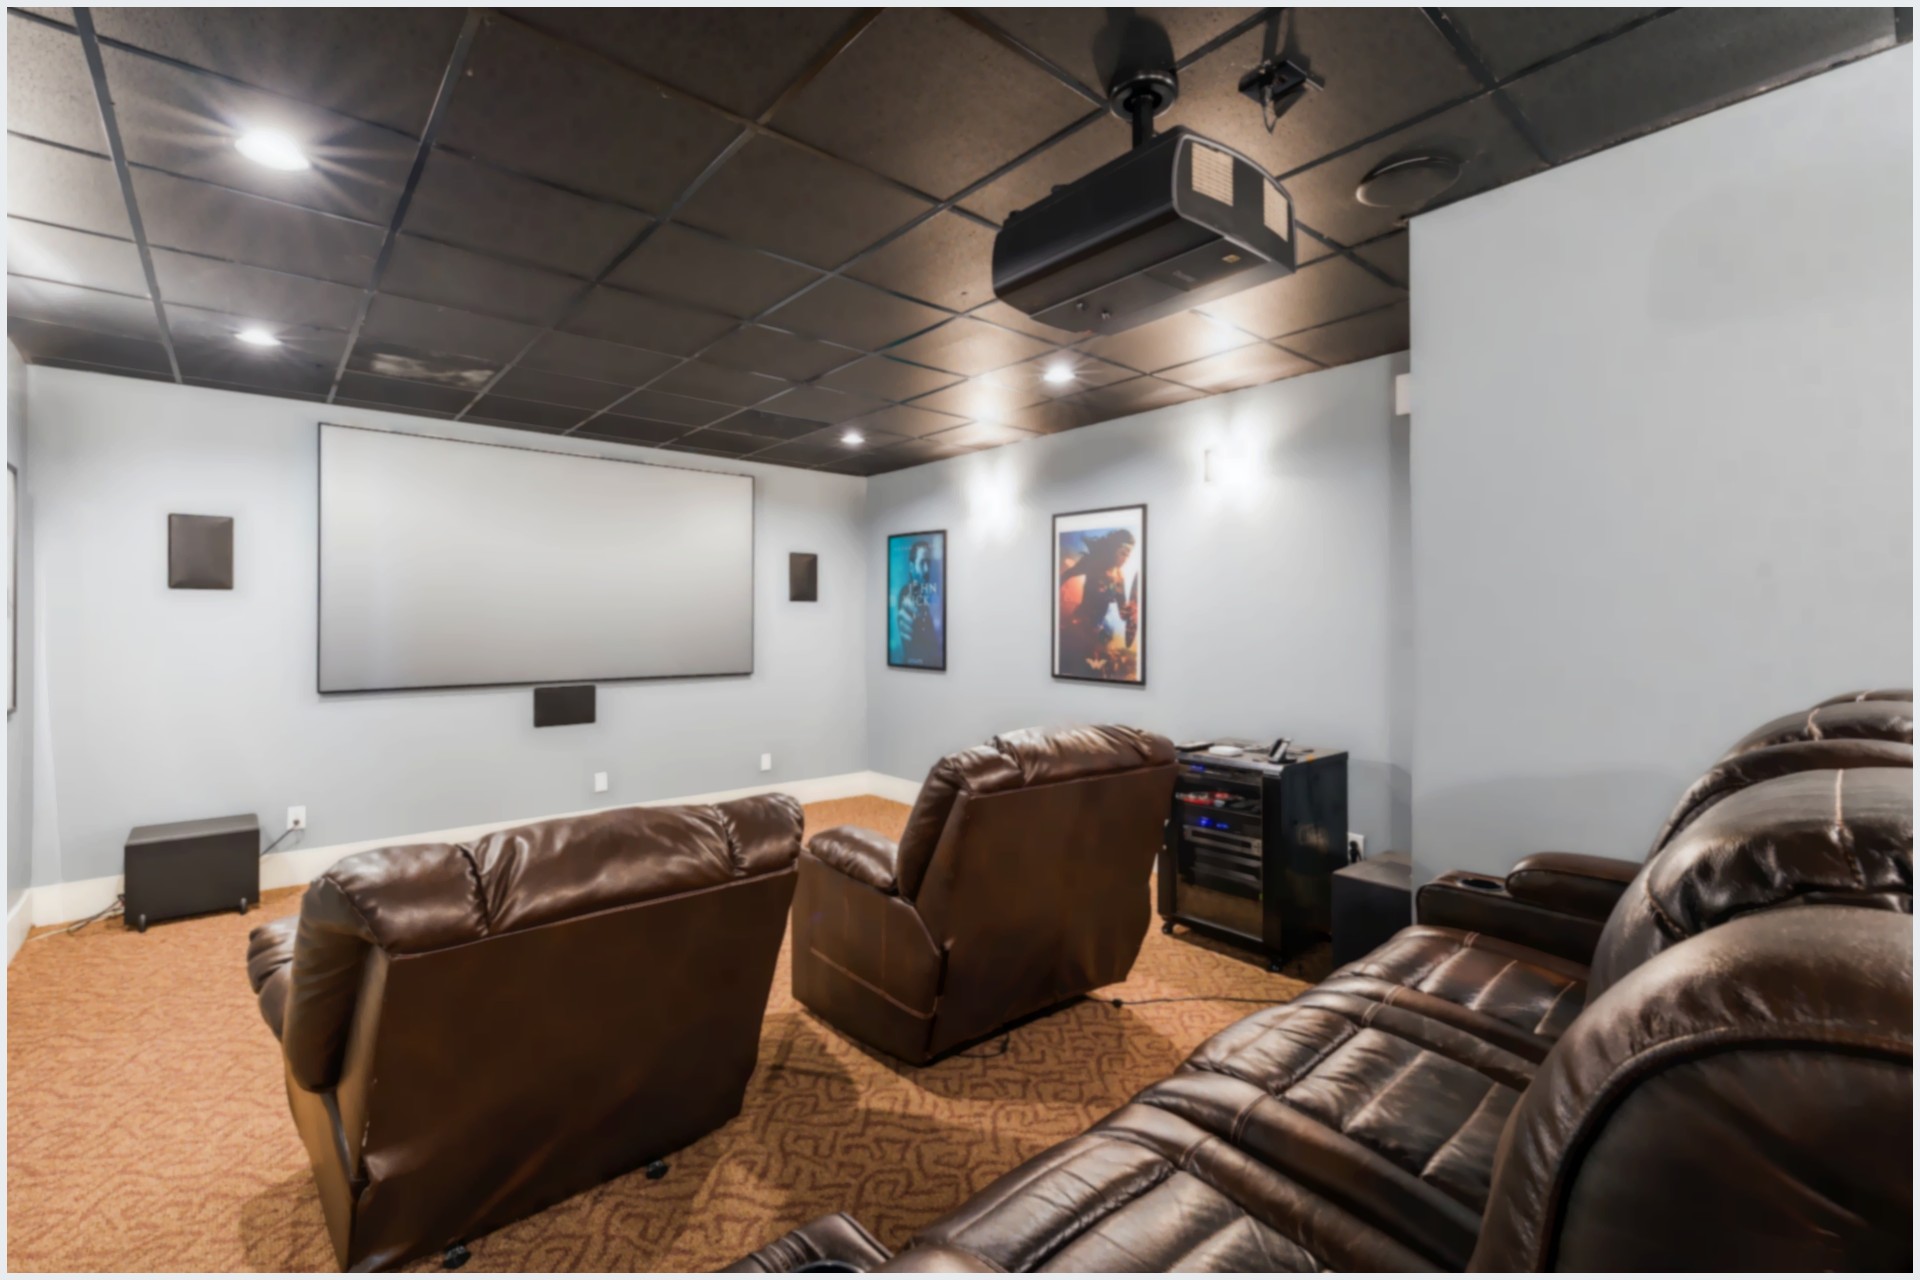 Sala de cinema em casa pequena: 4 dicas essenciais